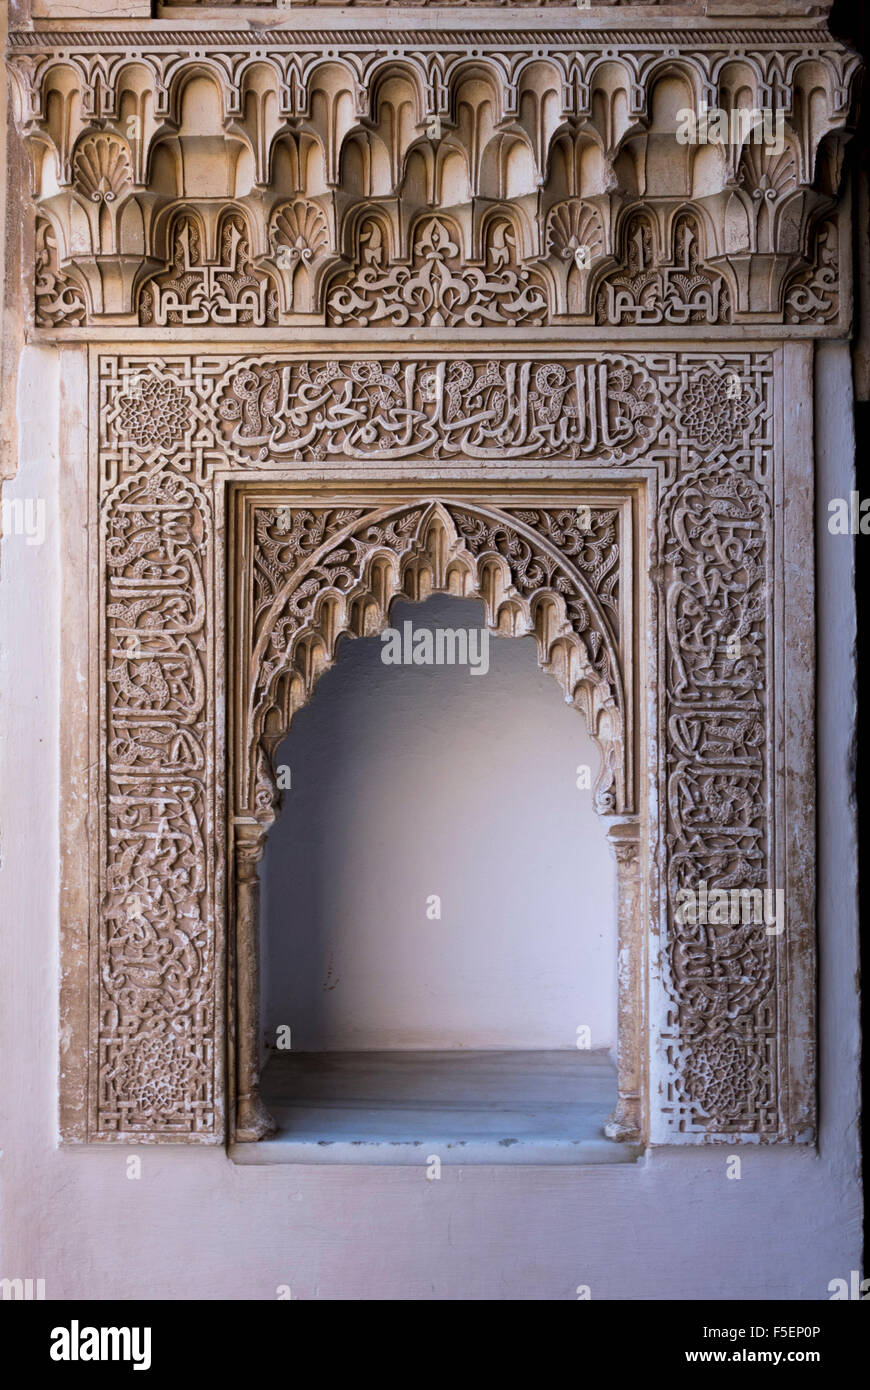 Nicho de pared con tallados ornamentados arch en el patio del palacio de la Alhambra, Granada, España Foto de stock